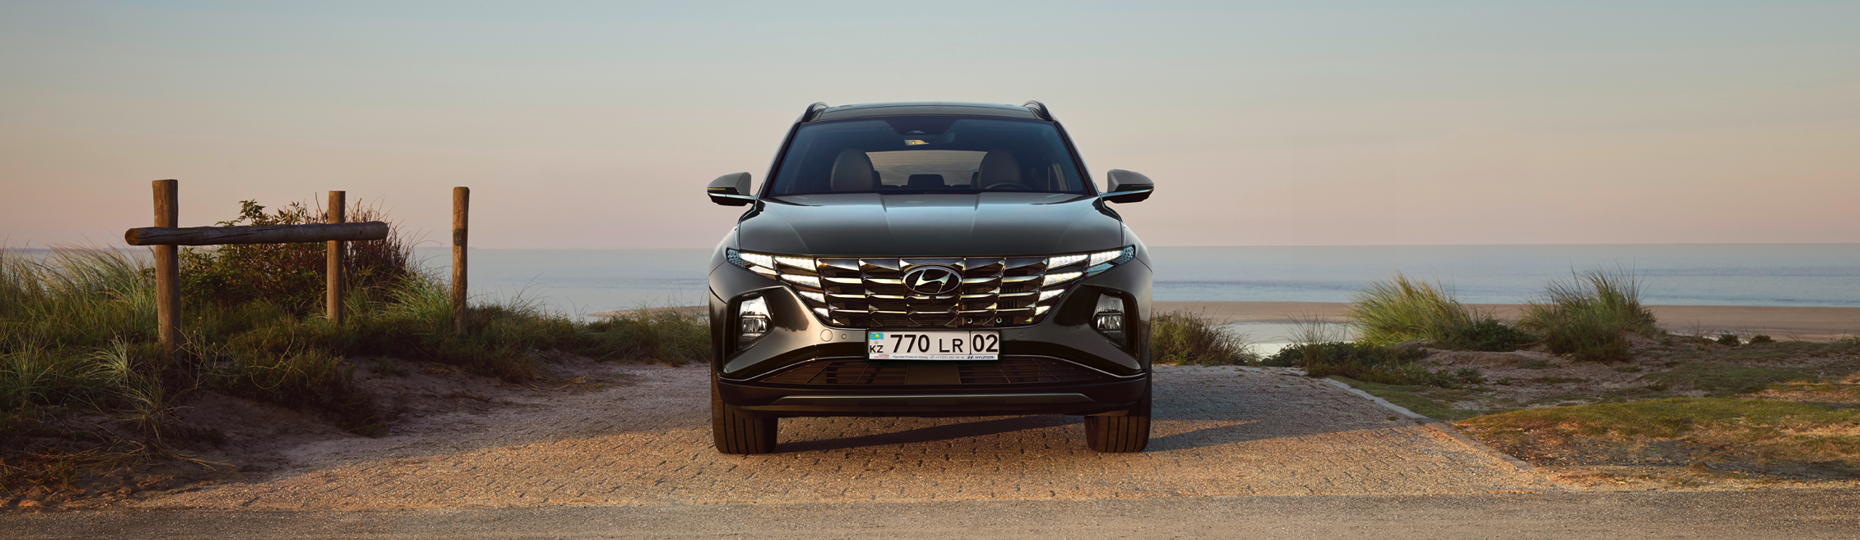 Жаңа Hyundai Tucson жайлылығы | Астанадағы ресми дилер